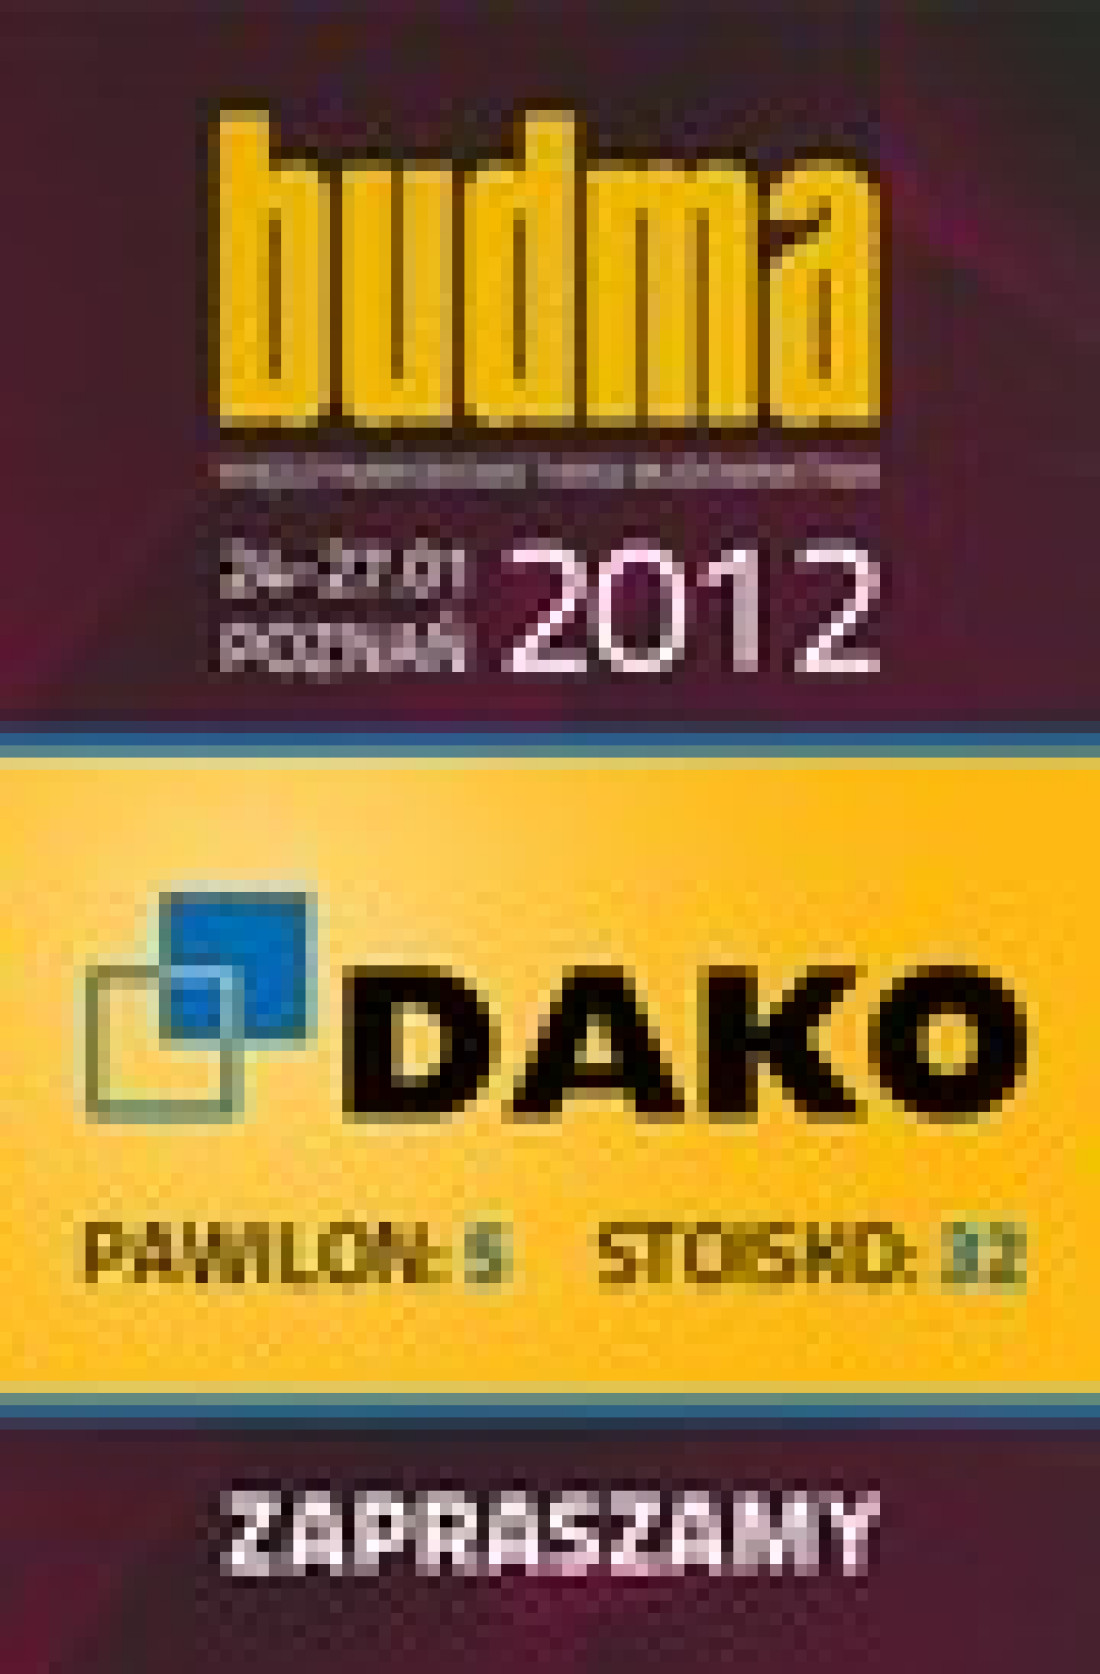 Grupa DAKO zaprasza na Budmę 2012